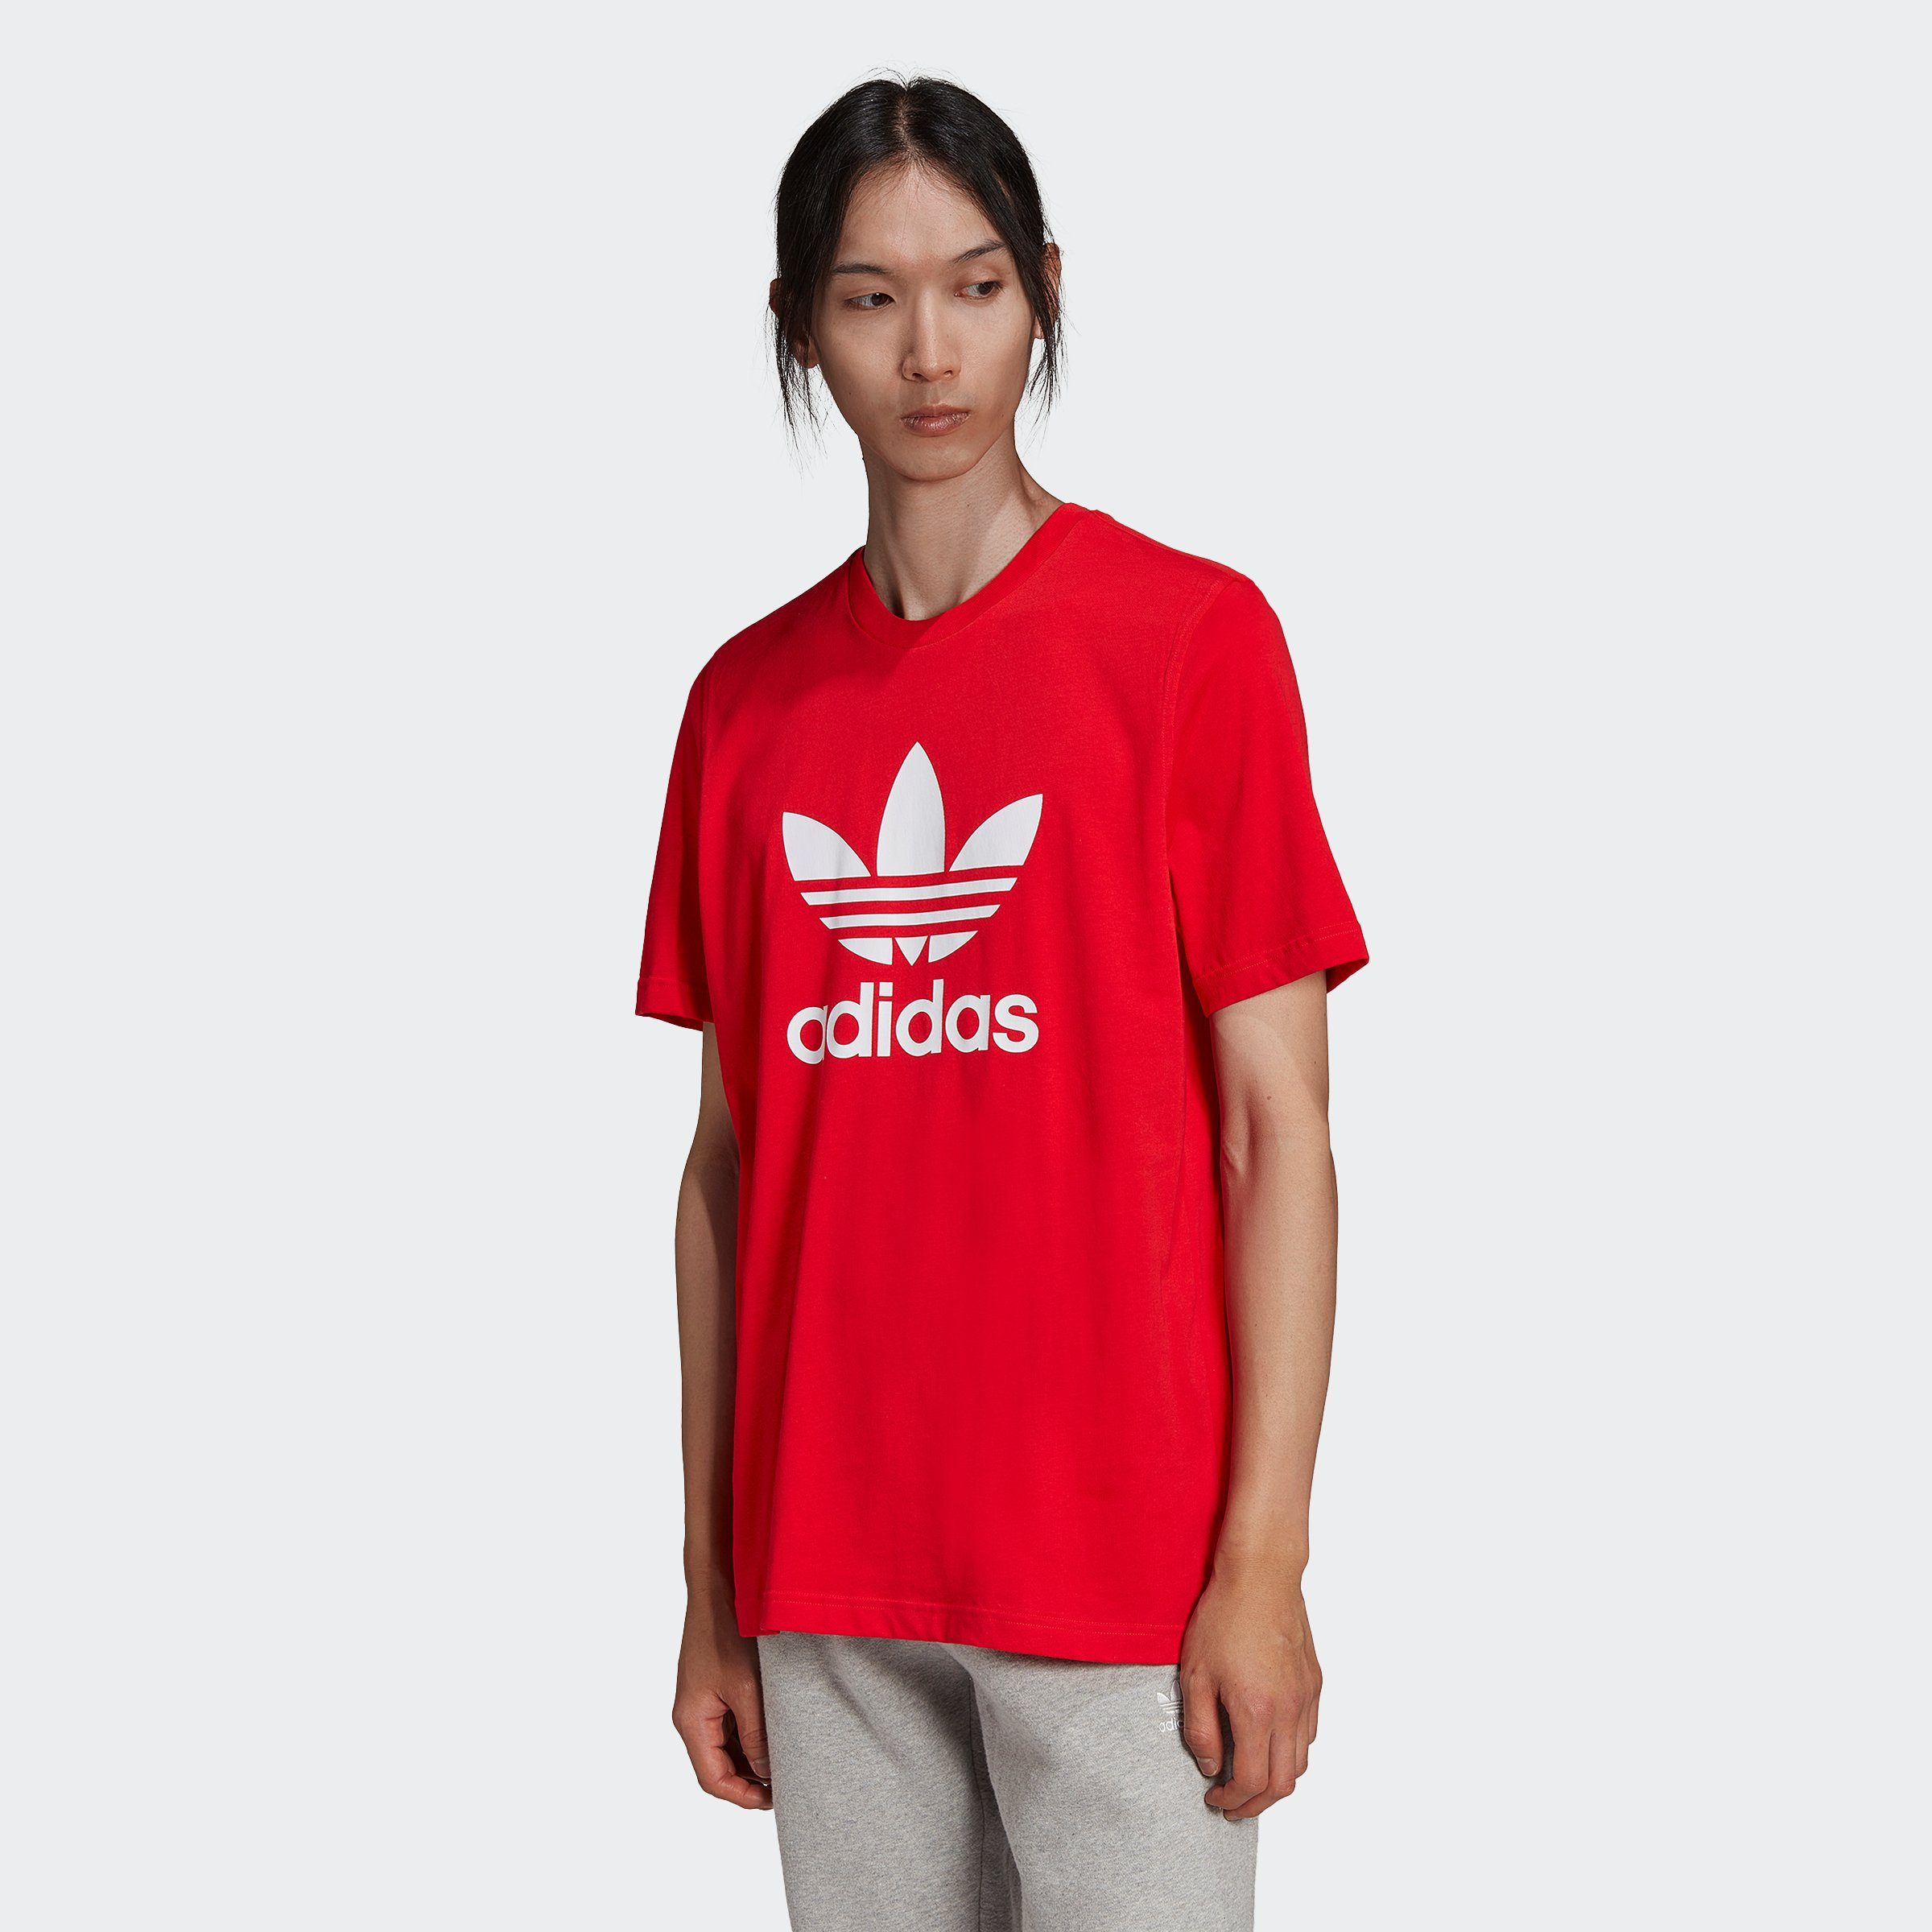 VIVRED/WHITE TREFOIL adidas T-Shirt Originals CLASSICS ADICOLOR